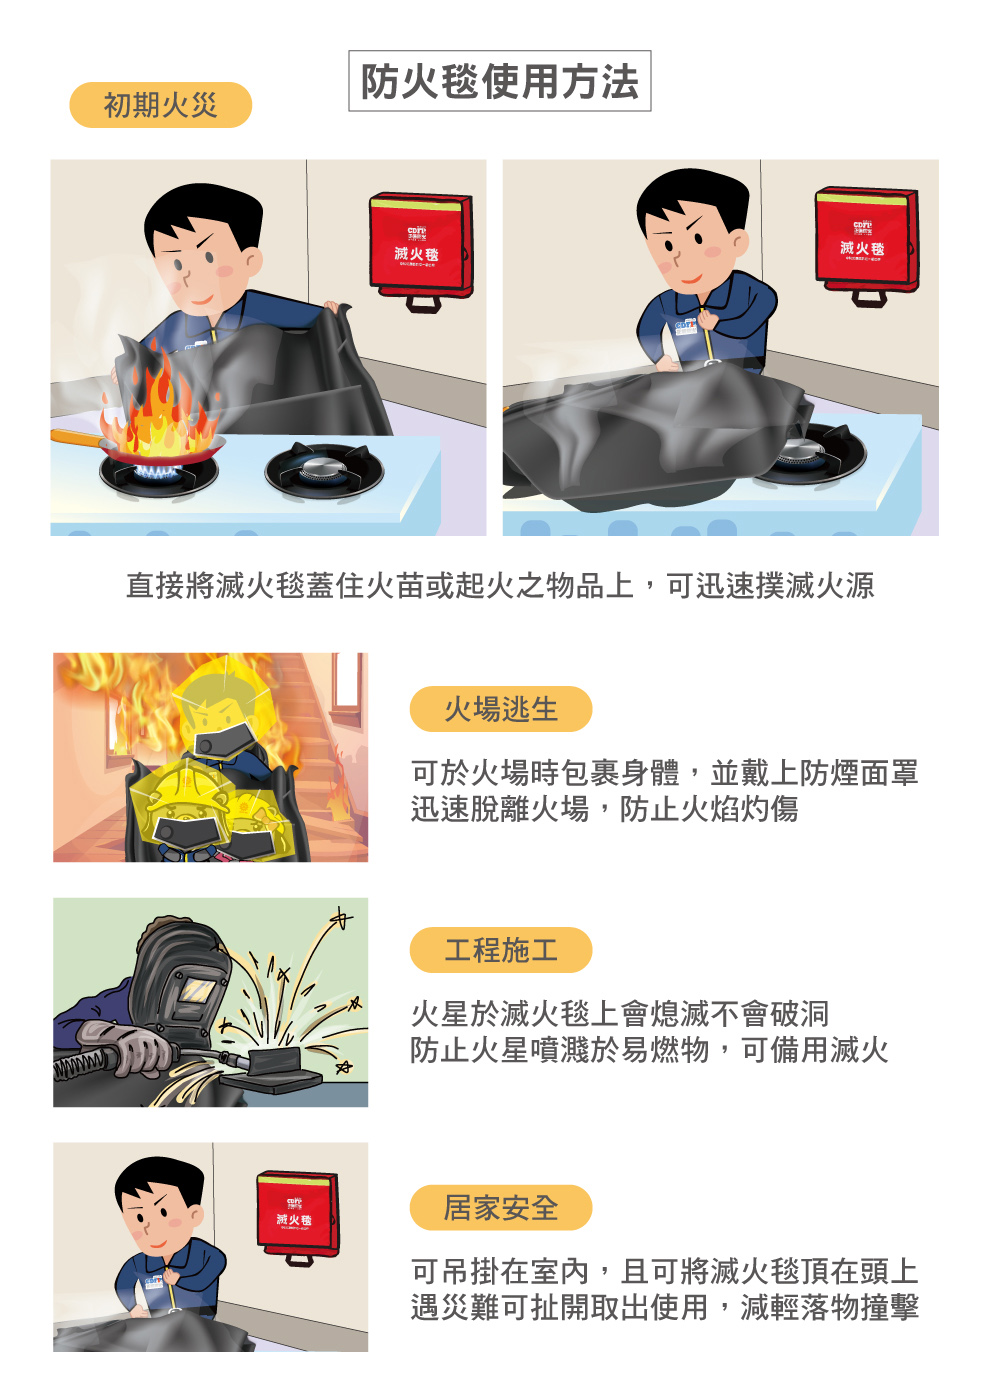 滅火毯 防火毯 台灣自製 火災逃生 火災初期 檢驗報告 材質 使用方法